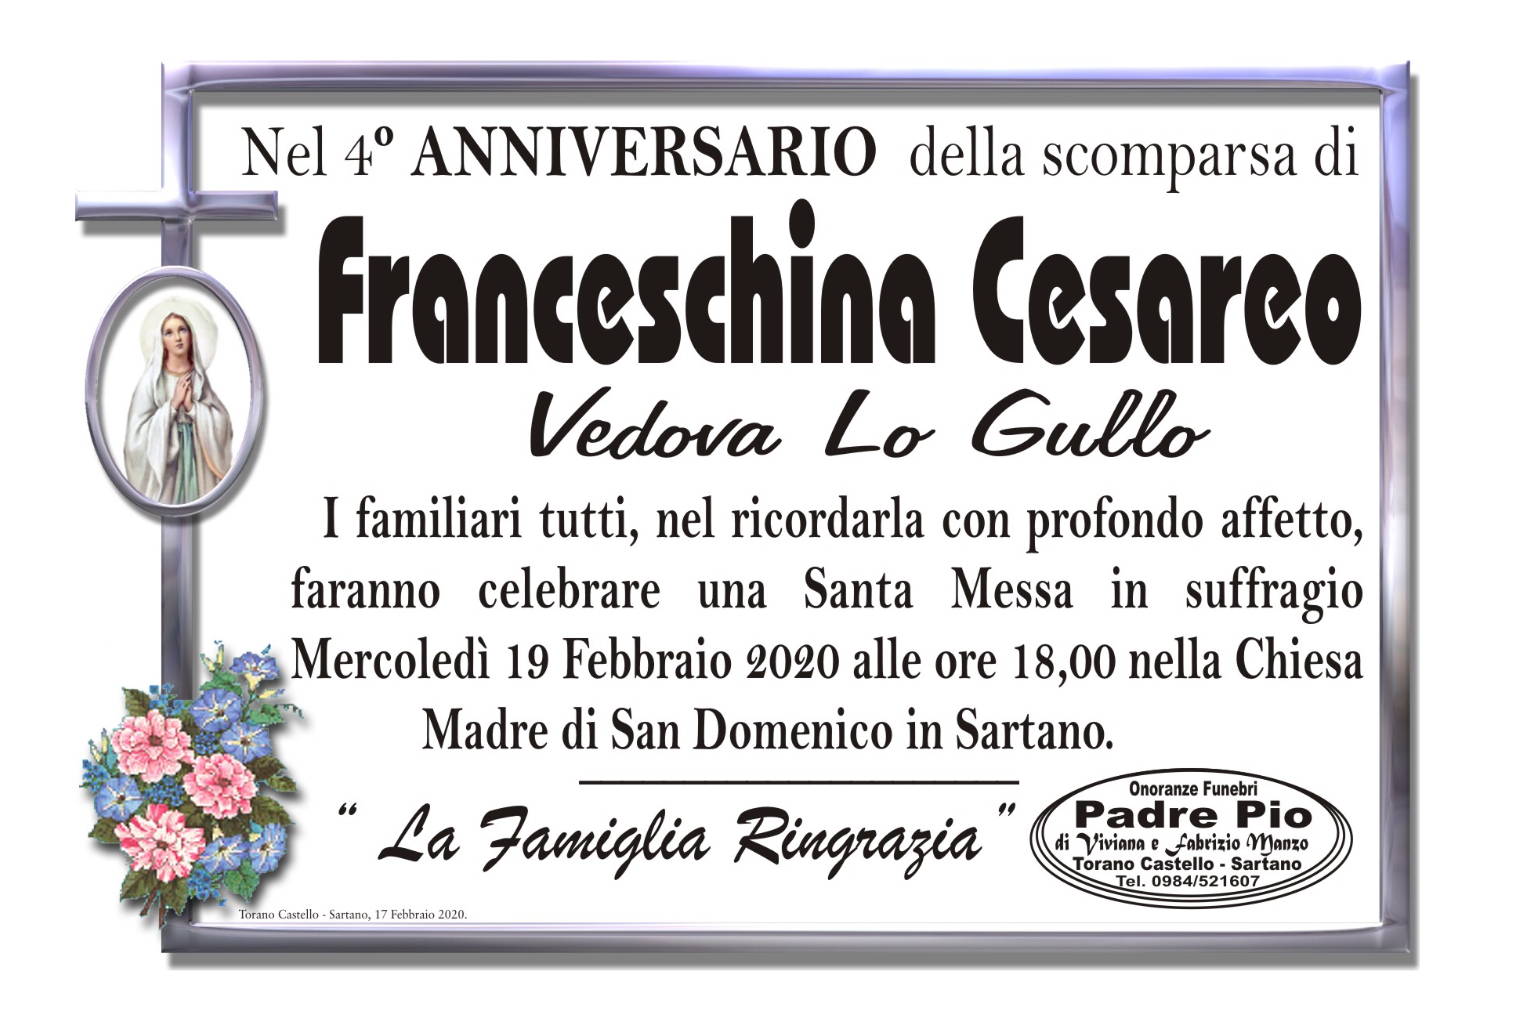 Franceschina Cesareo